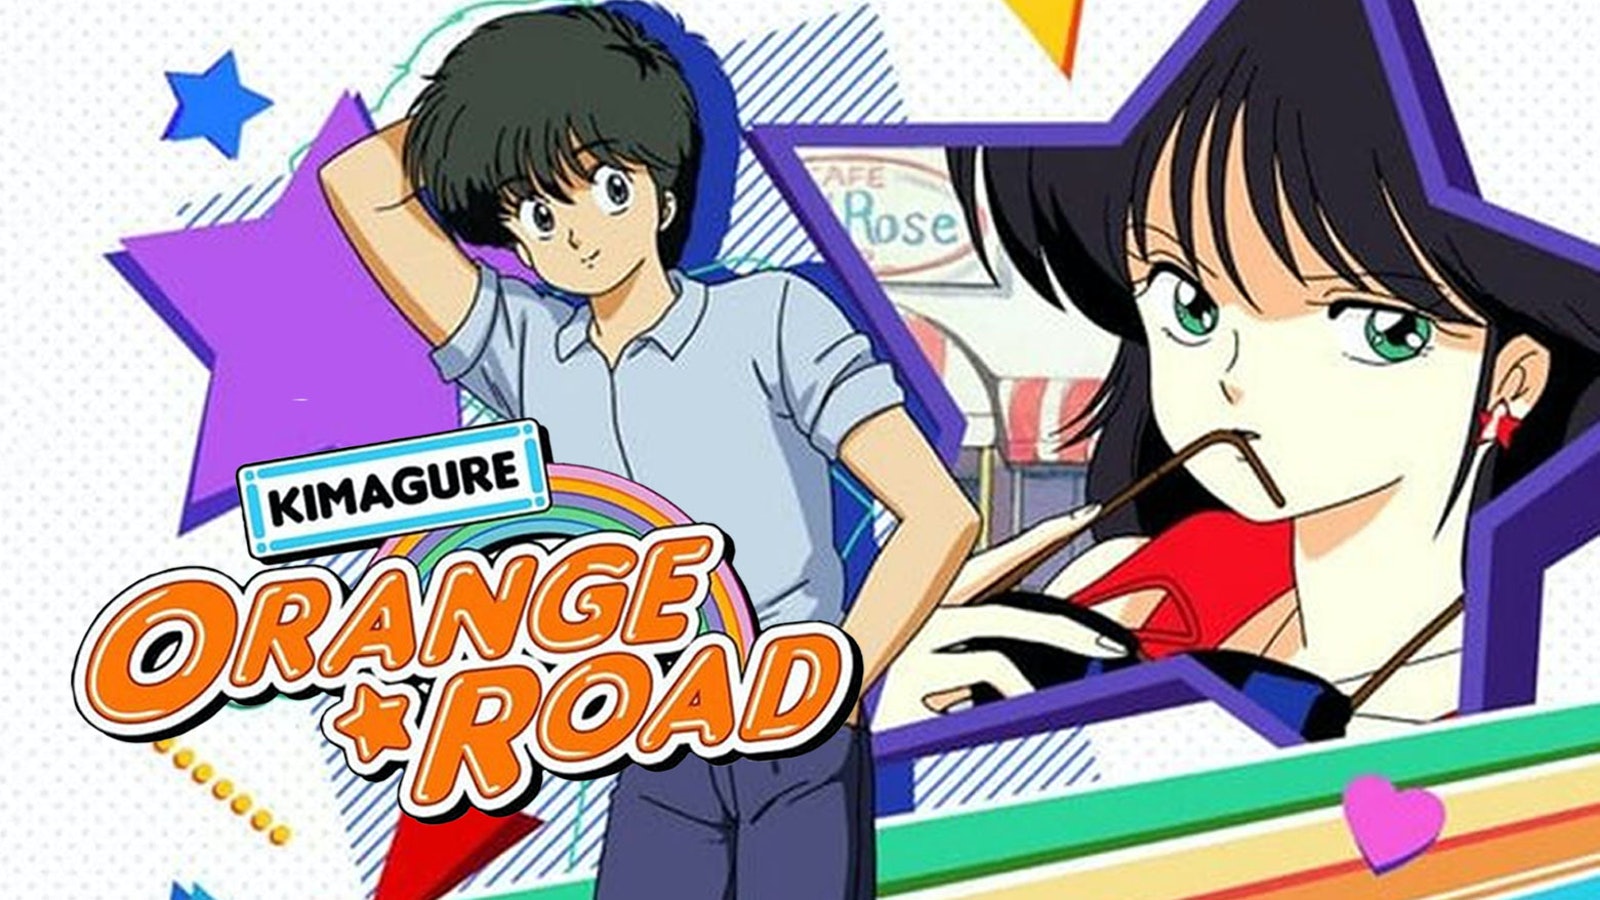 Kimagure Orange Road: The Series Free on Pluto TV United States